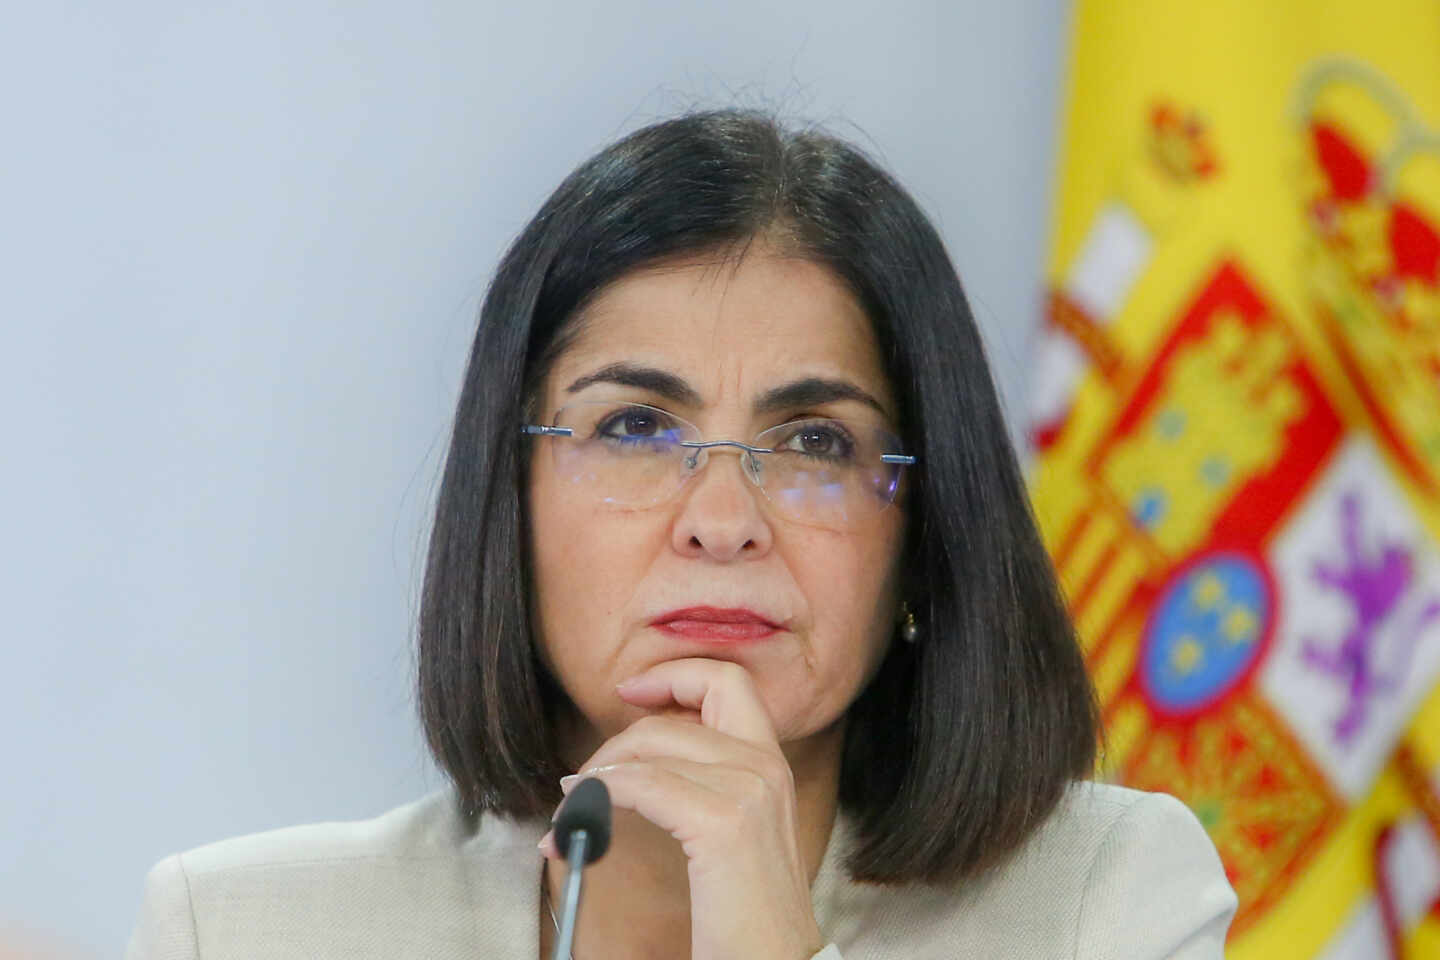 La ministra de Sanidad, Carolina Darias, ha aprobado la vuelta de público a los estadios / El Independiente 